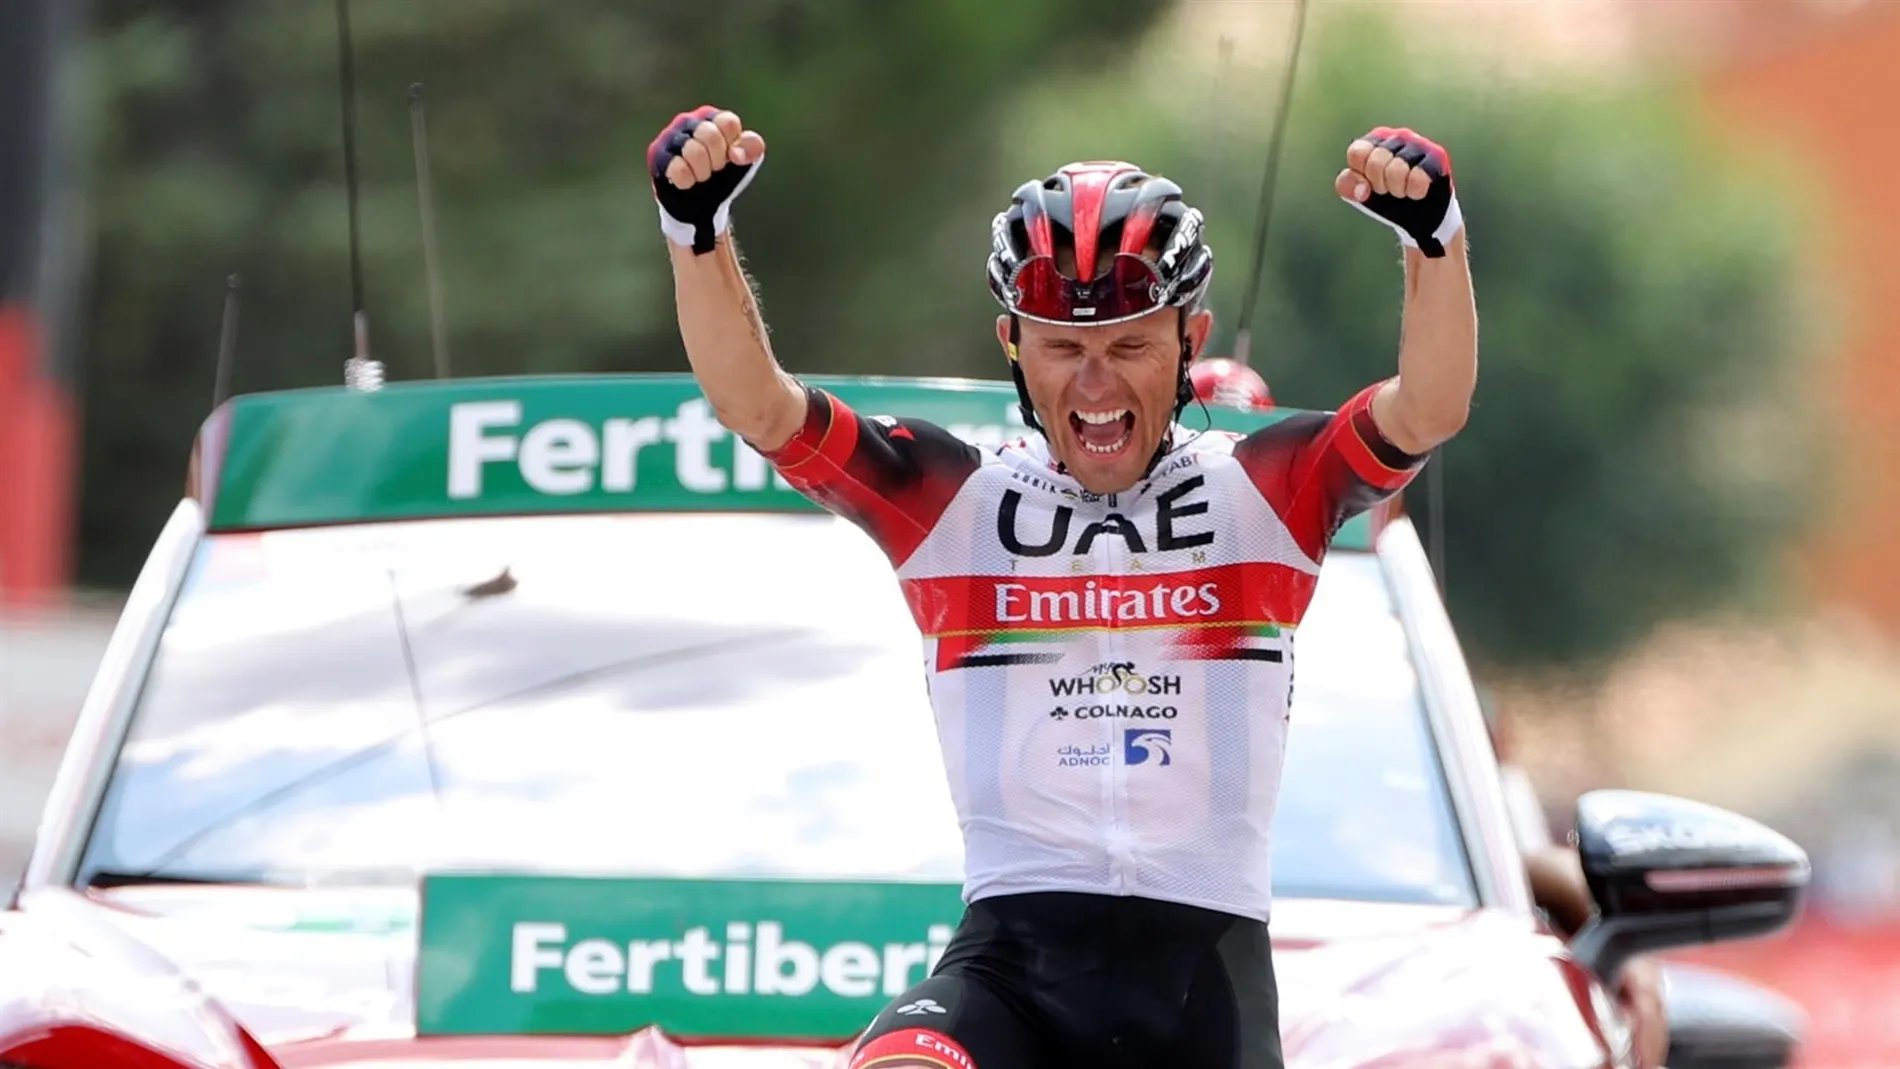 Majka vence en El Barraco y Eiking aguanta el liderato de la Vuelta a España un día más 